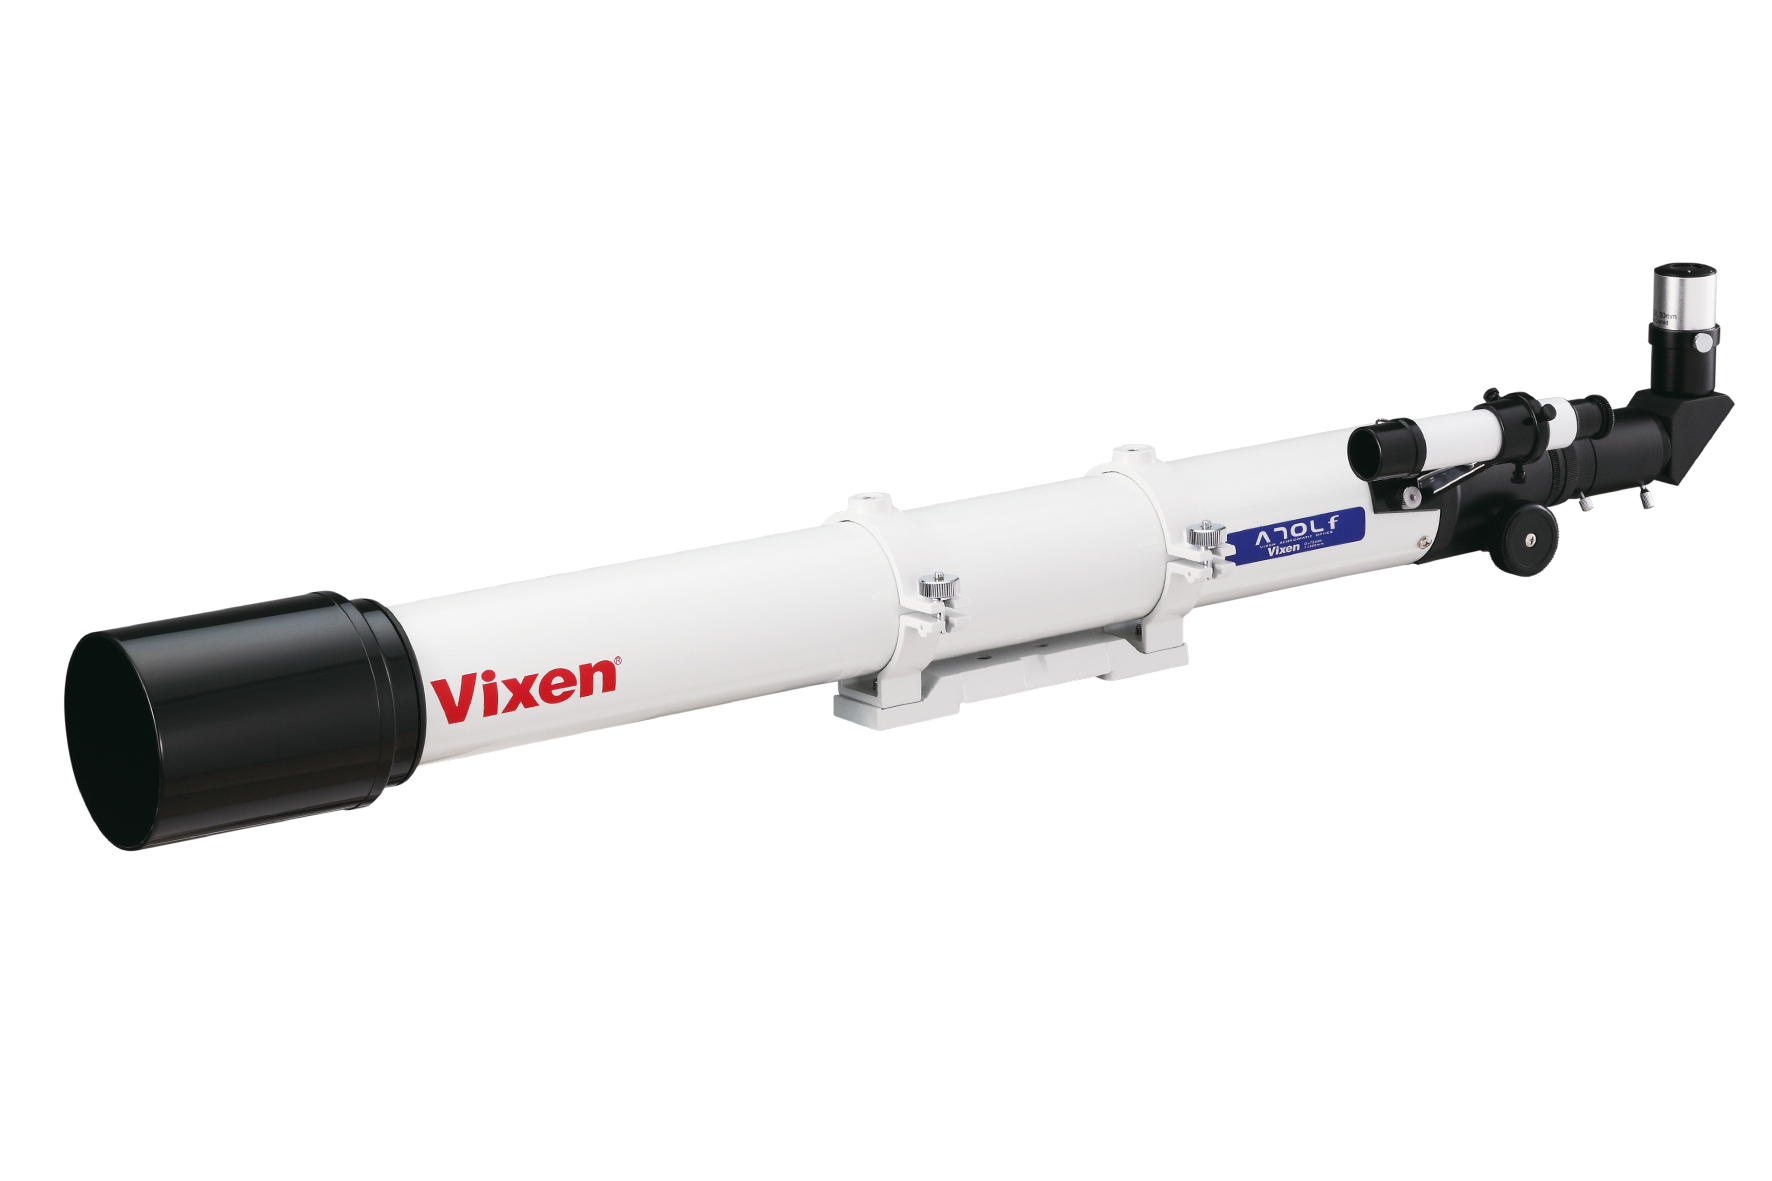 Rifrattore acromatico Vixen A70Lf - tubo ottico